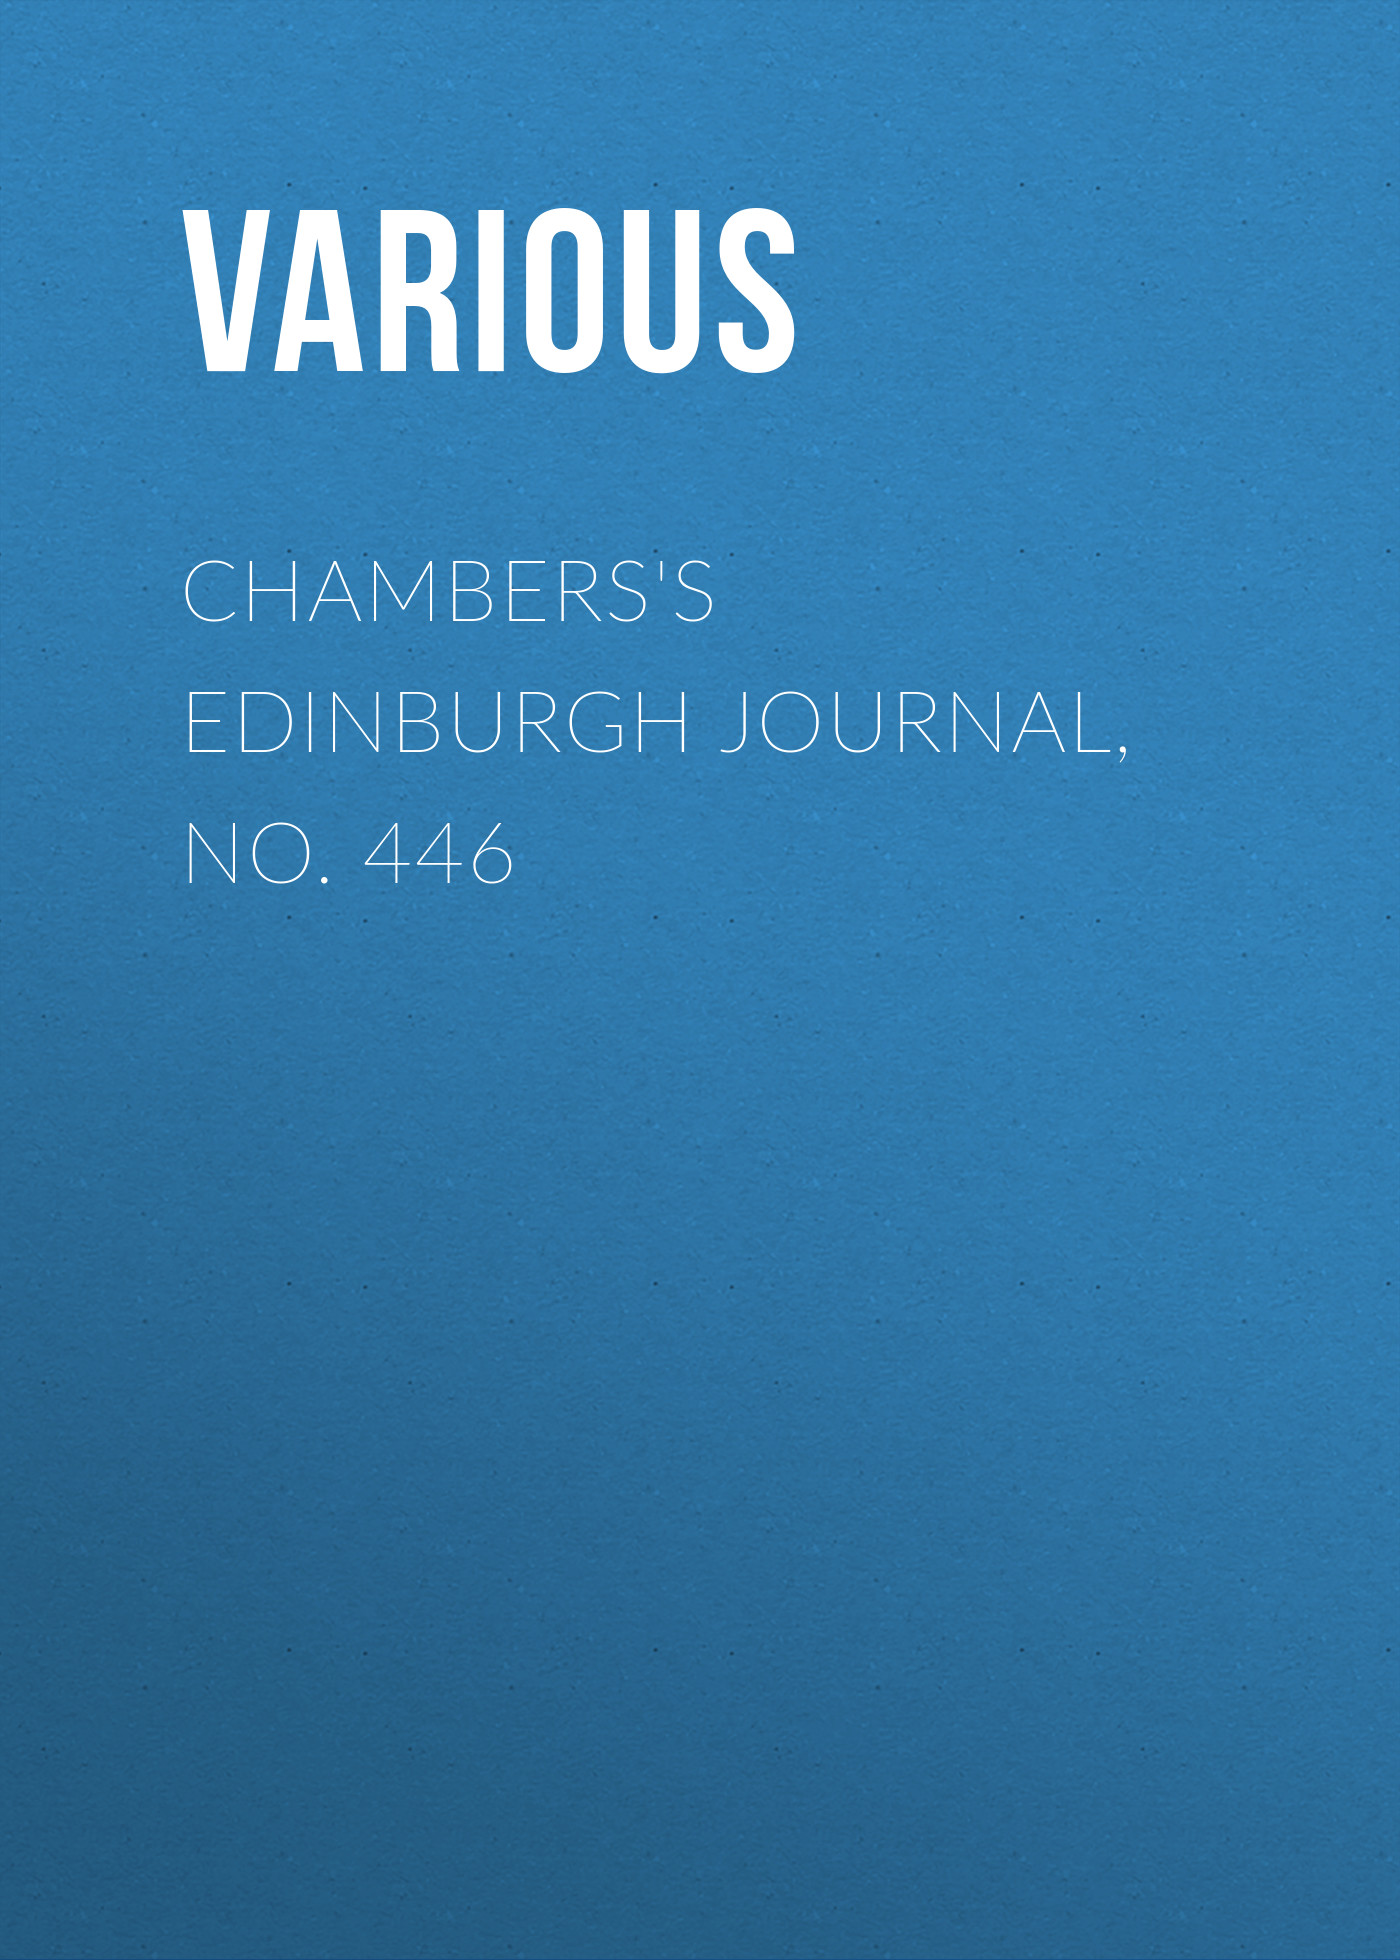 Книга Chambers's Edinburgh Journal, No. 446 из серии , созданная  Various, может относится к жанру Зарубежная старинная литература, Журналы, Зарубежная образовательная литература. Стоимость электронной книги Chambers's Edinburgh Journal, No. 446 с идентификатором 35492327 составляет 0 руб.